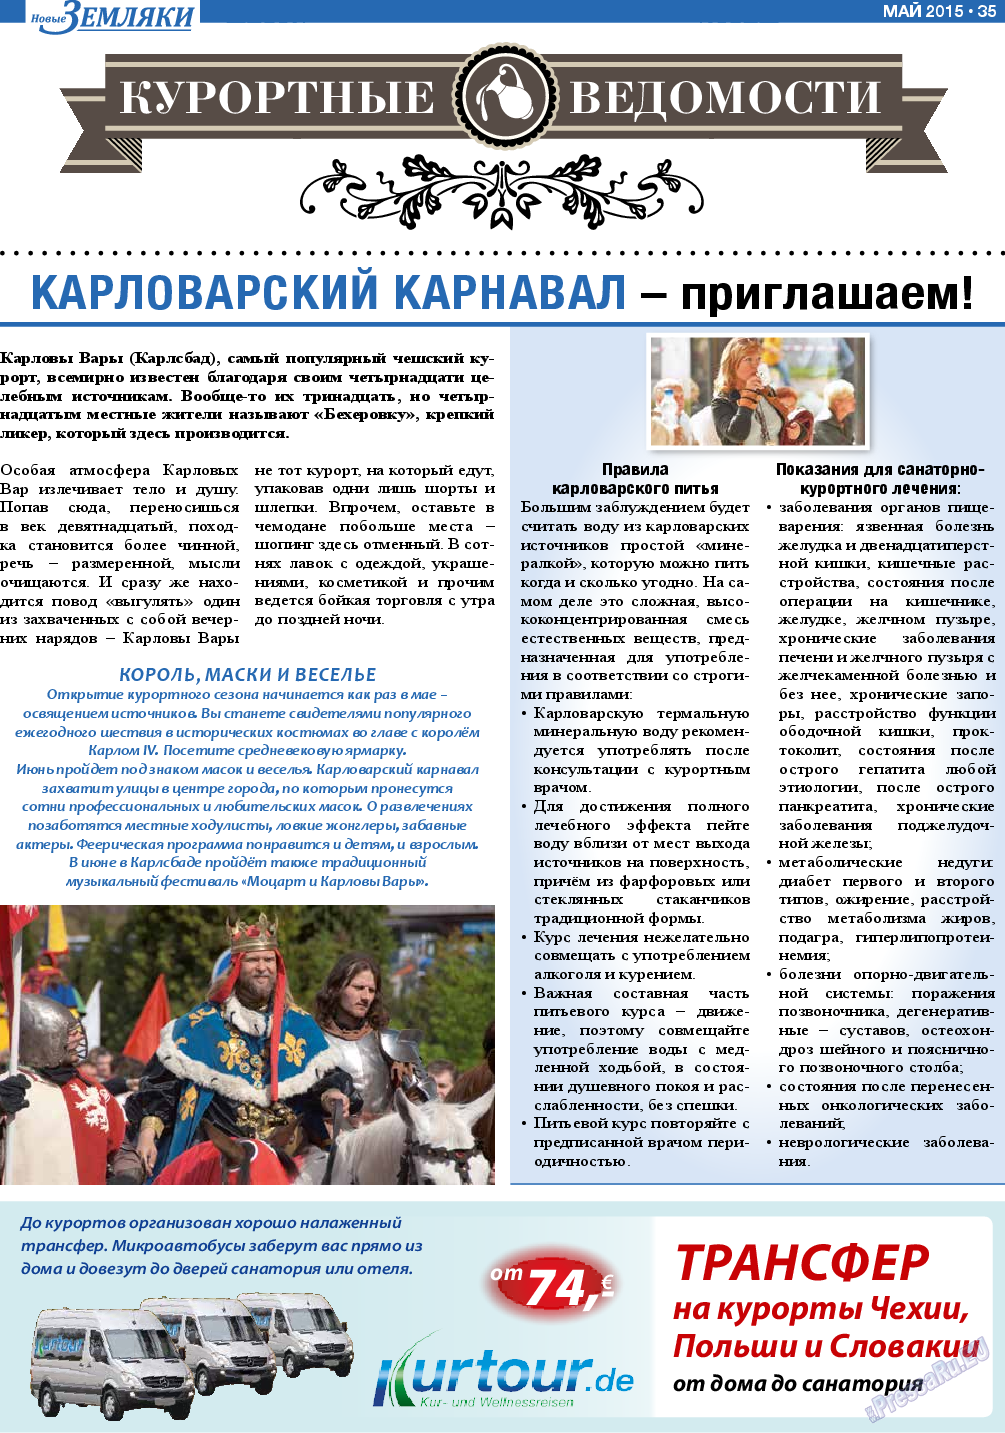 Новые Земляки (газета). 2015 год, номер 5, стр. 35